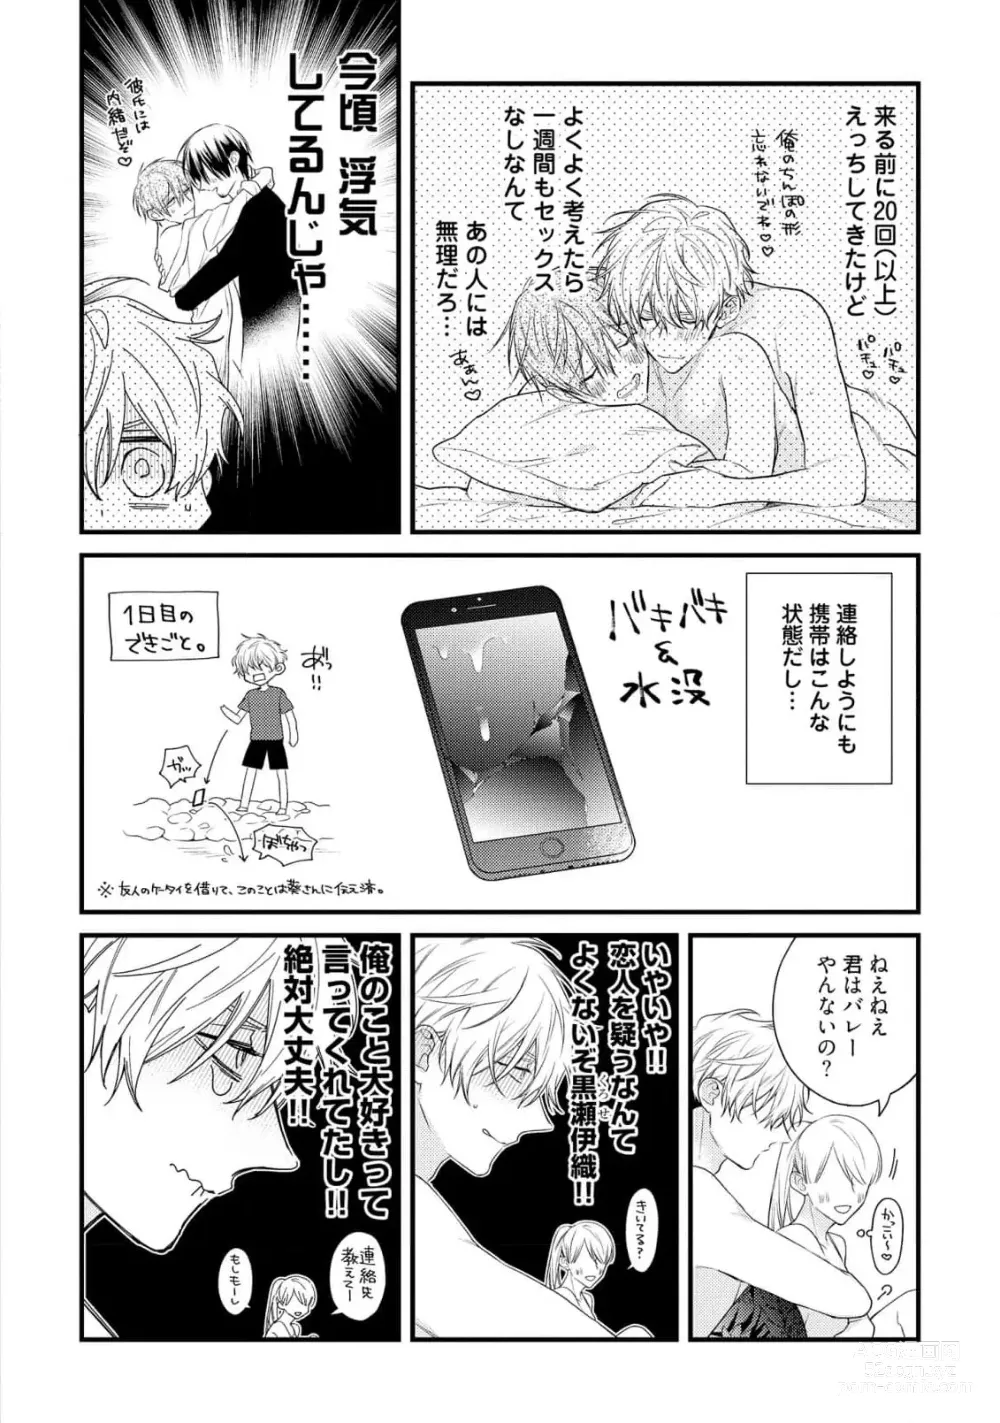 Page 182 of manga Ecchi wa shuu 7 Kibou Desu!